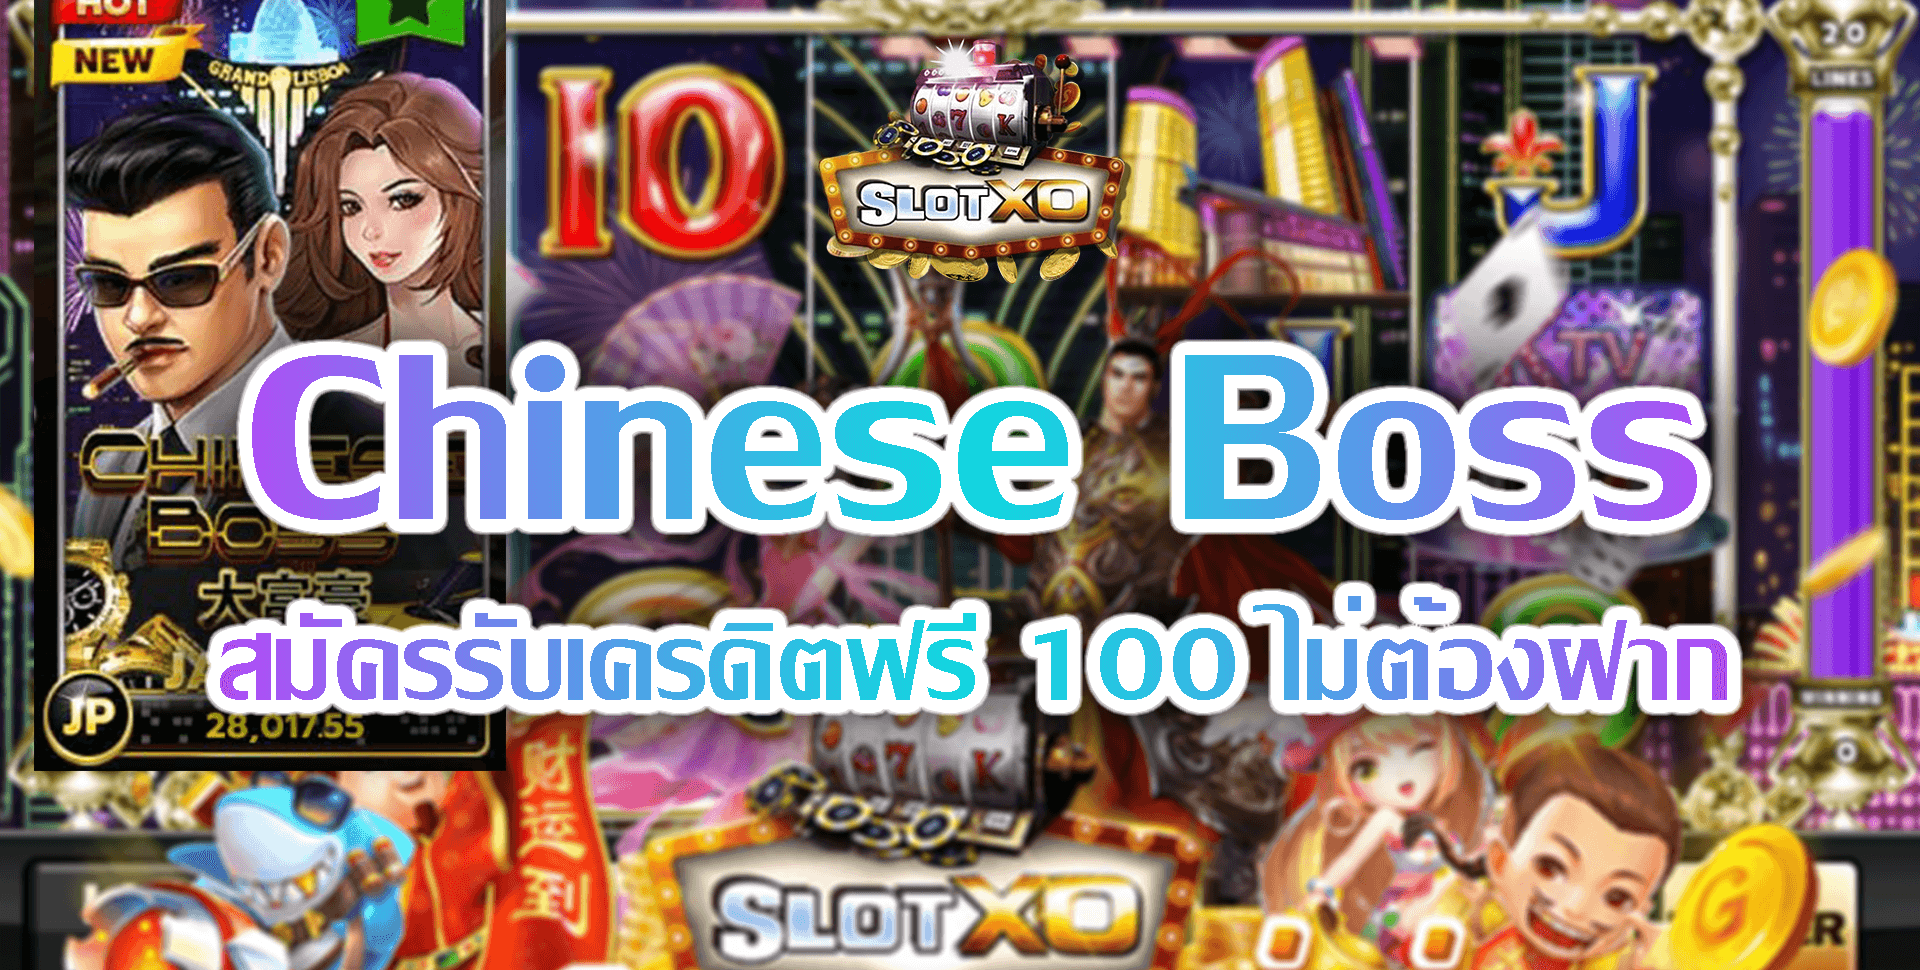 Slotxo-Slot xo-Chinese-Boss-5